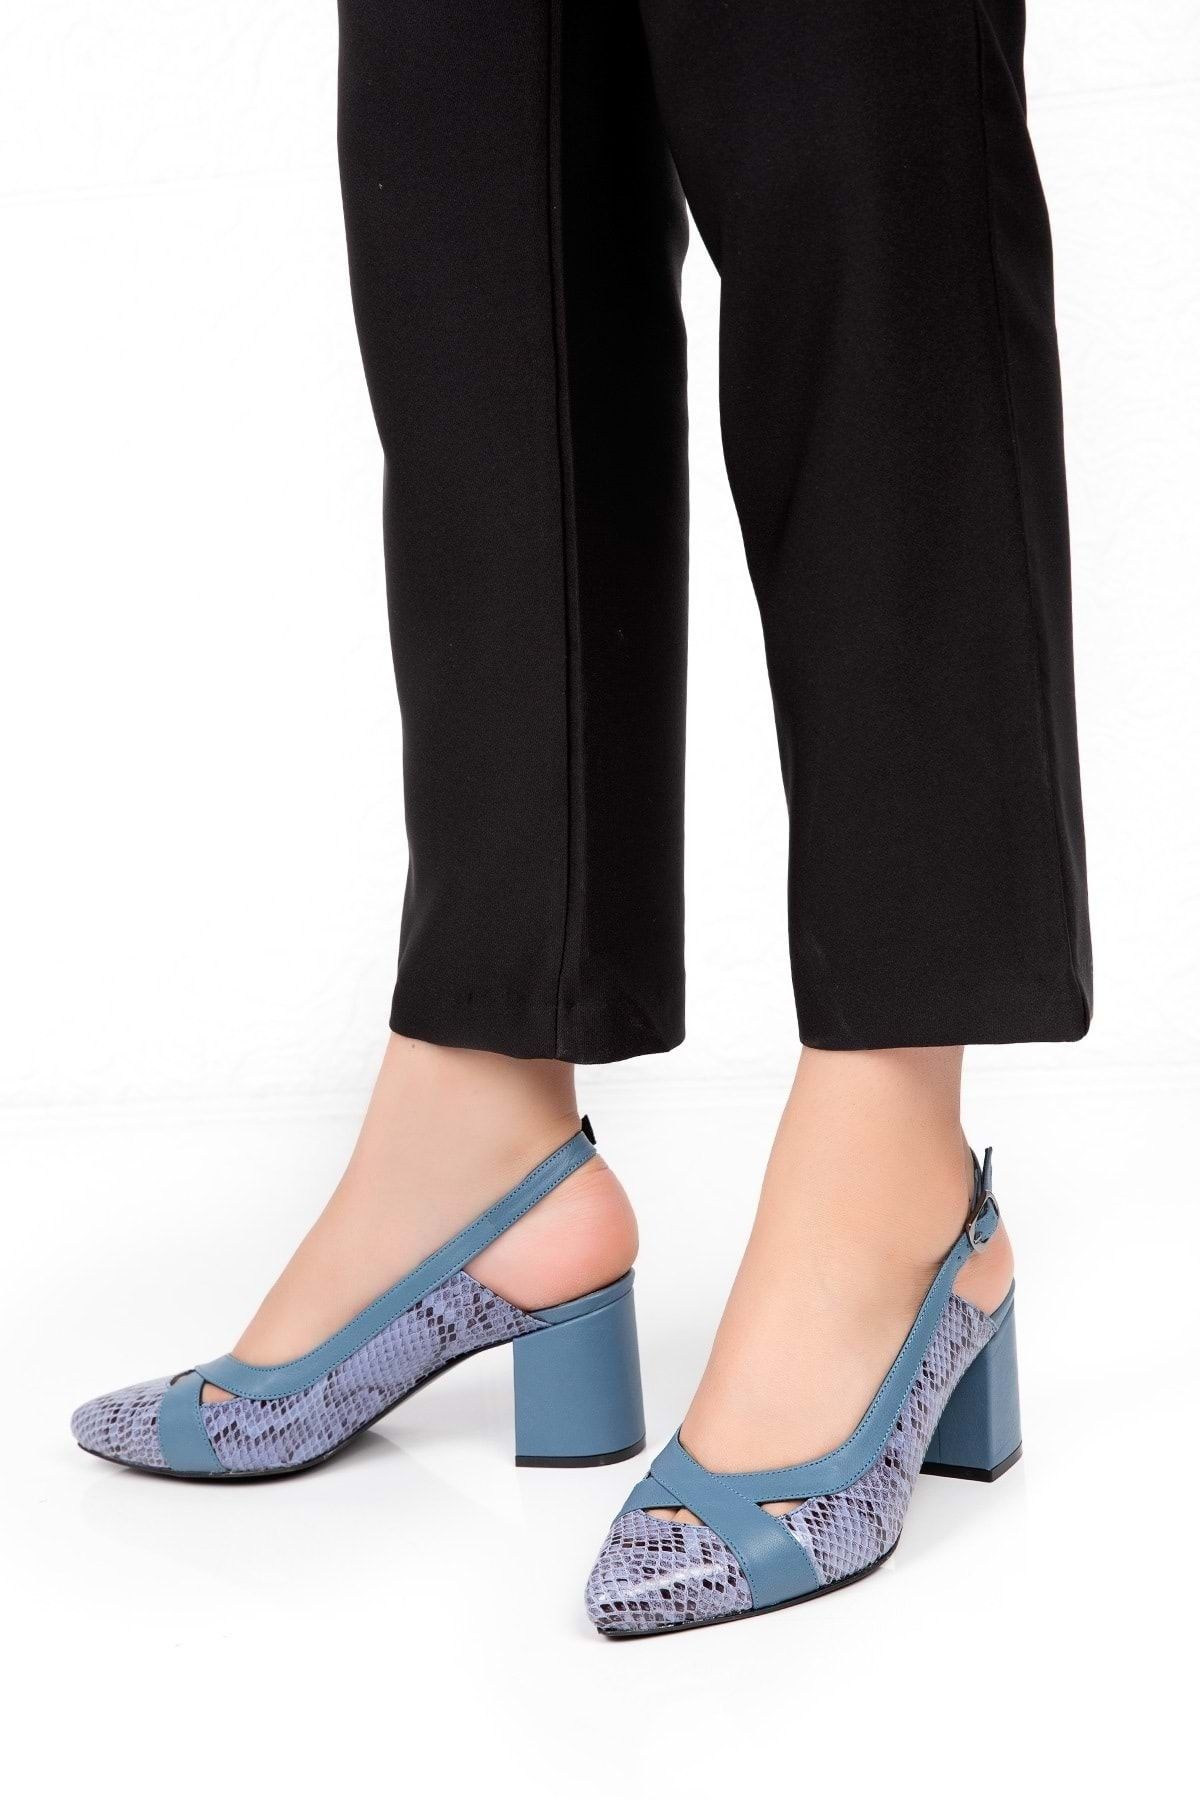 Gondol Hakiki Deri Yılan Desen Ayrıntılı Topuklu Ayakkabı Şhn.0738 - Mavi - 39